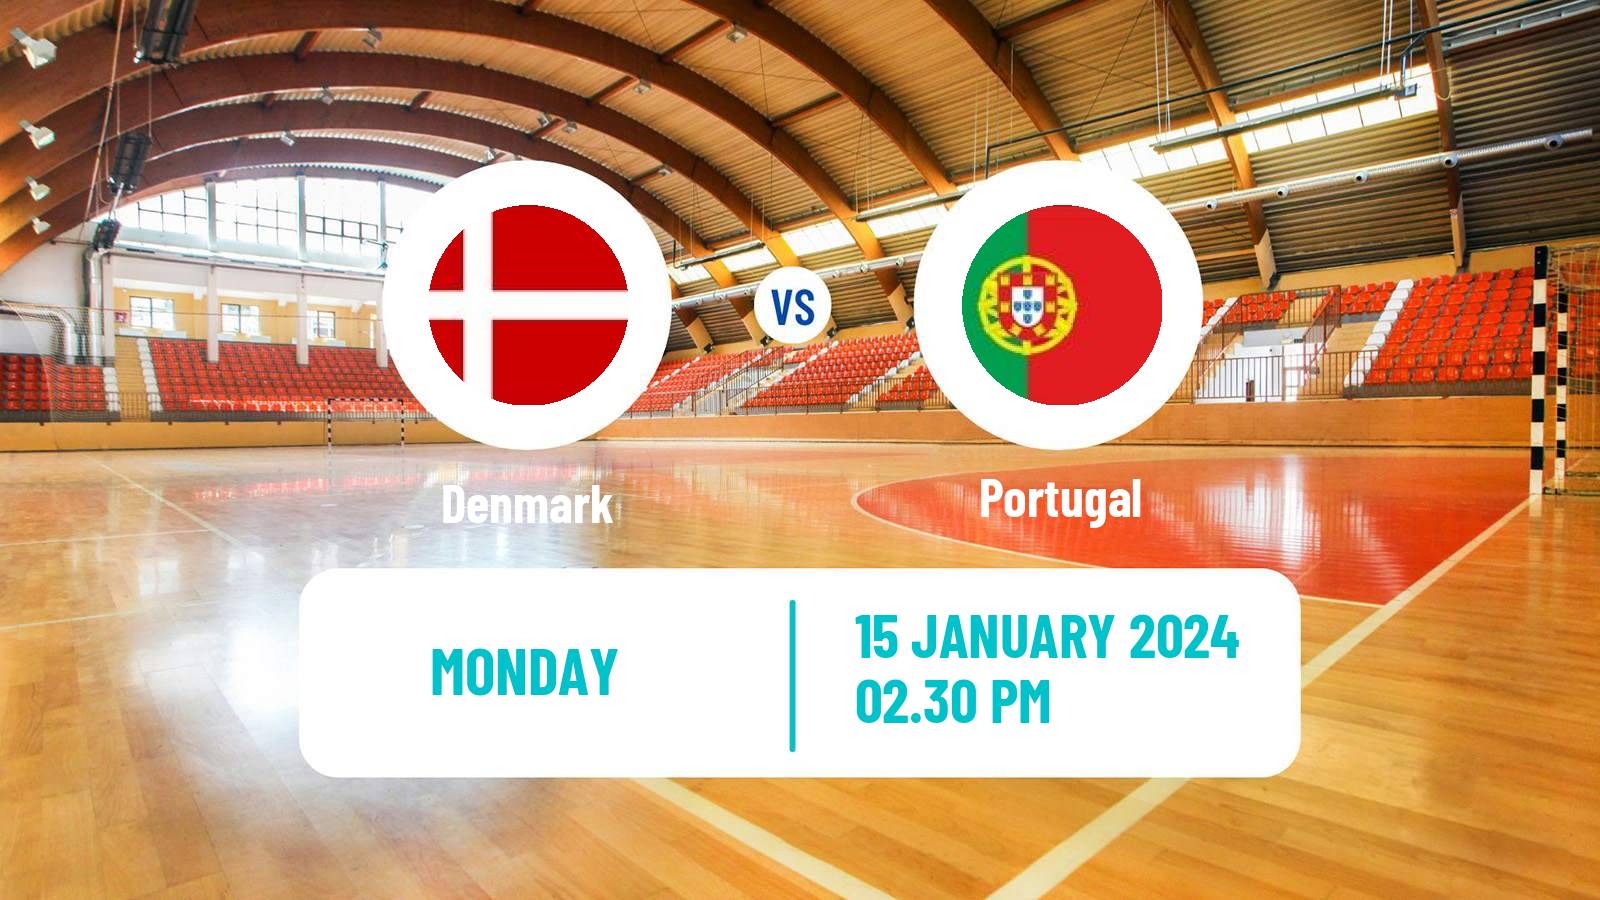 Handball Handball European Championship Denmark - Portugal